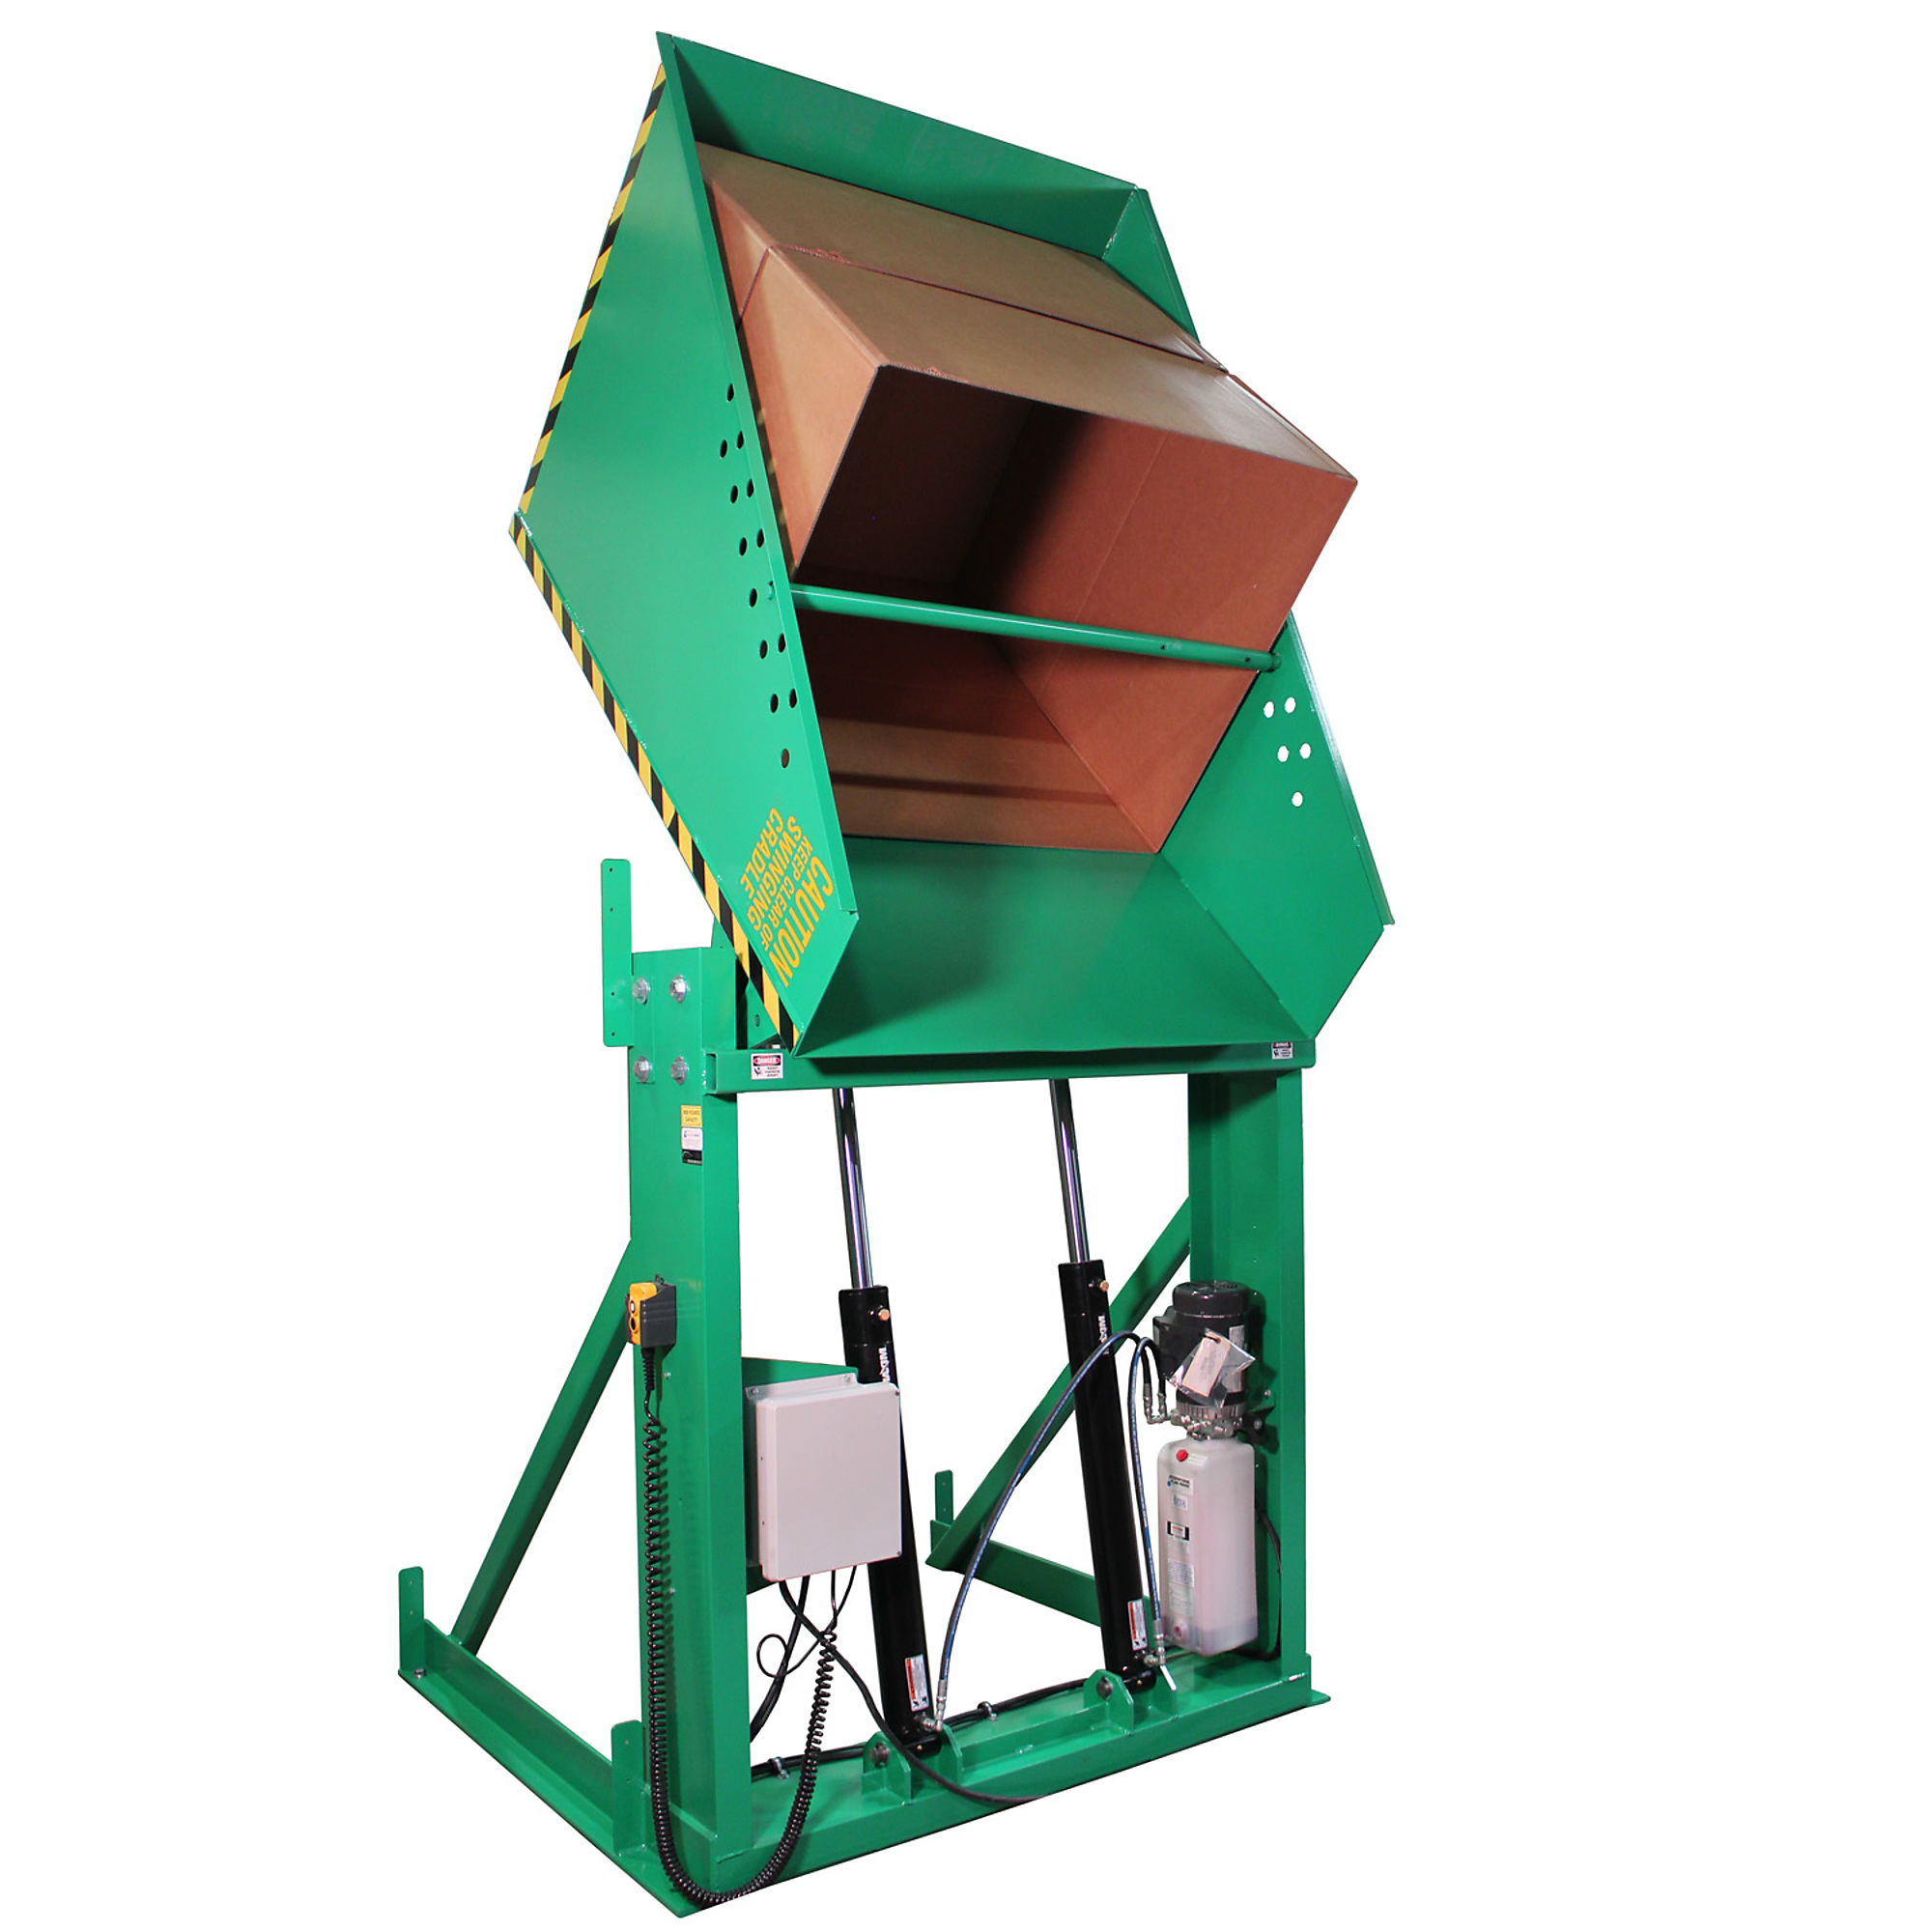 Valley Craft, Box Dumper, 36x36Inch Chute, Capacity 6000 lb, Color Green, Model F80173A3